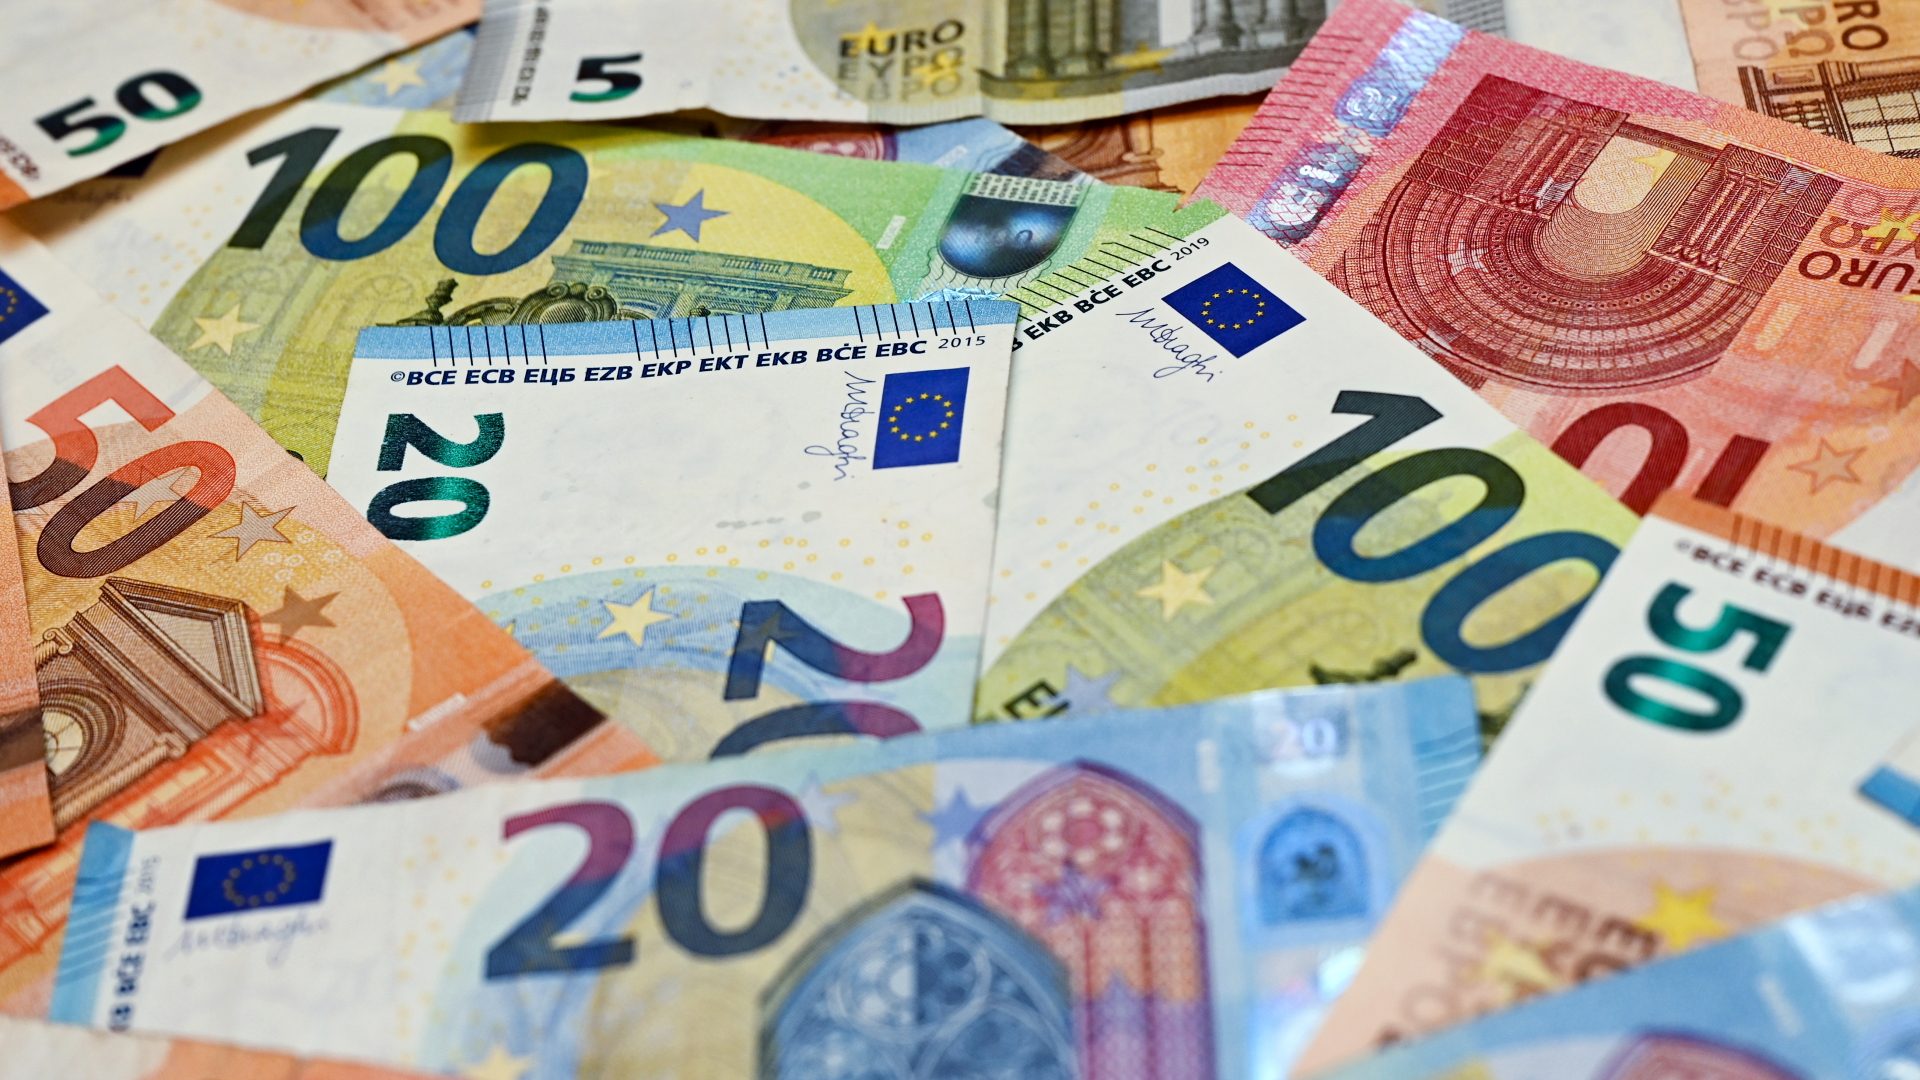 Eurobanknoten liegen auf einem Tisch  | Bildquelle: dpa